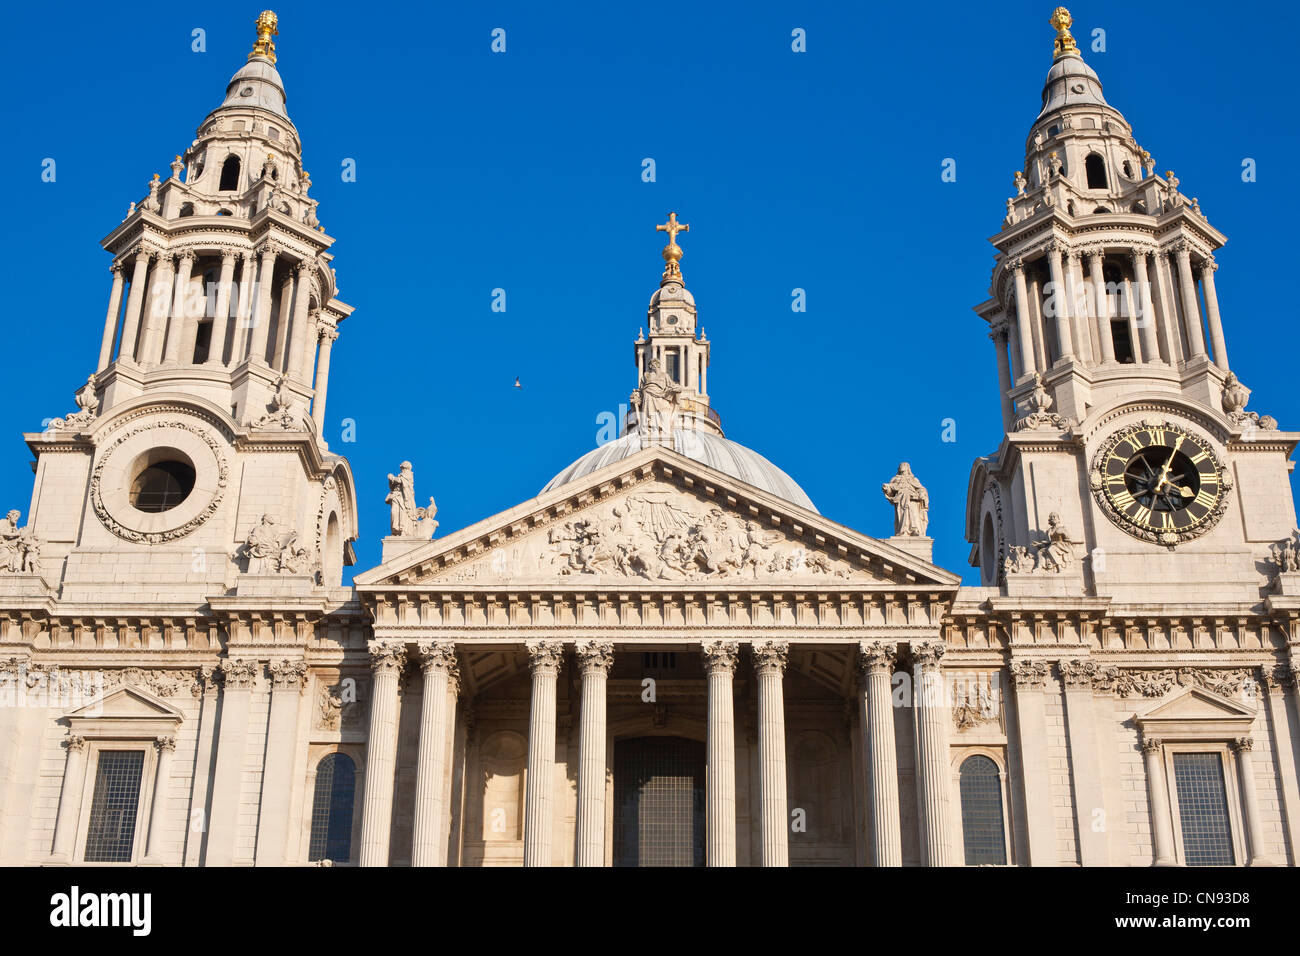 Regno Unito, Londra, la città, la cattedrale di San Paolo, progettata dall'architetto britannico Christopher Wren, inaugurato nel 1710 Foto Stock